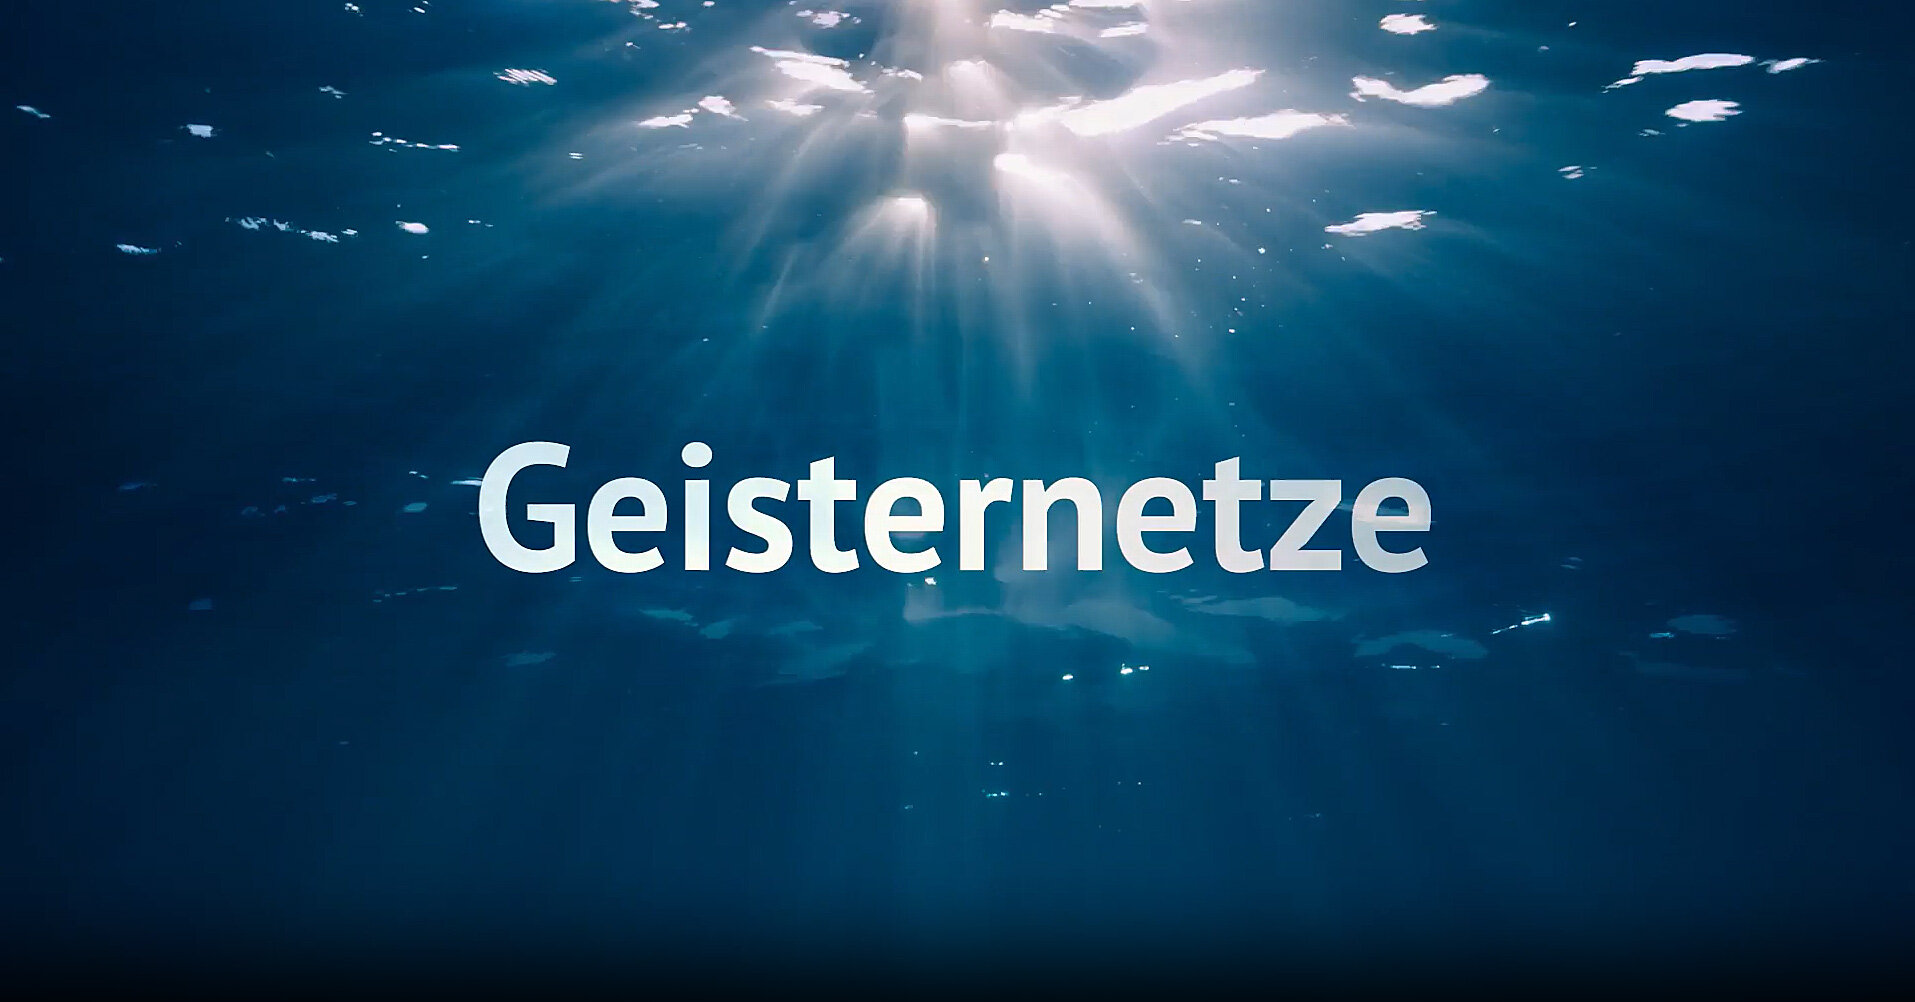 Video-Thumbnail zu einem Film über sogenannte Geisternetze, die als Abfall in den Weltmeeren treiben oder am Meeresboden hängen und die Meerestiere bedrohen